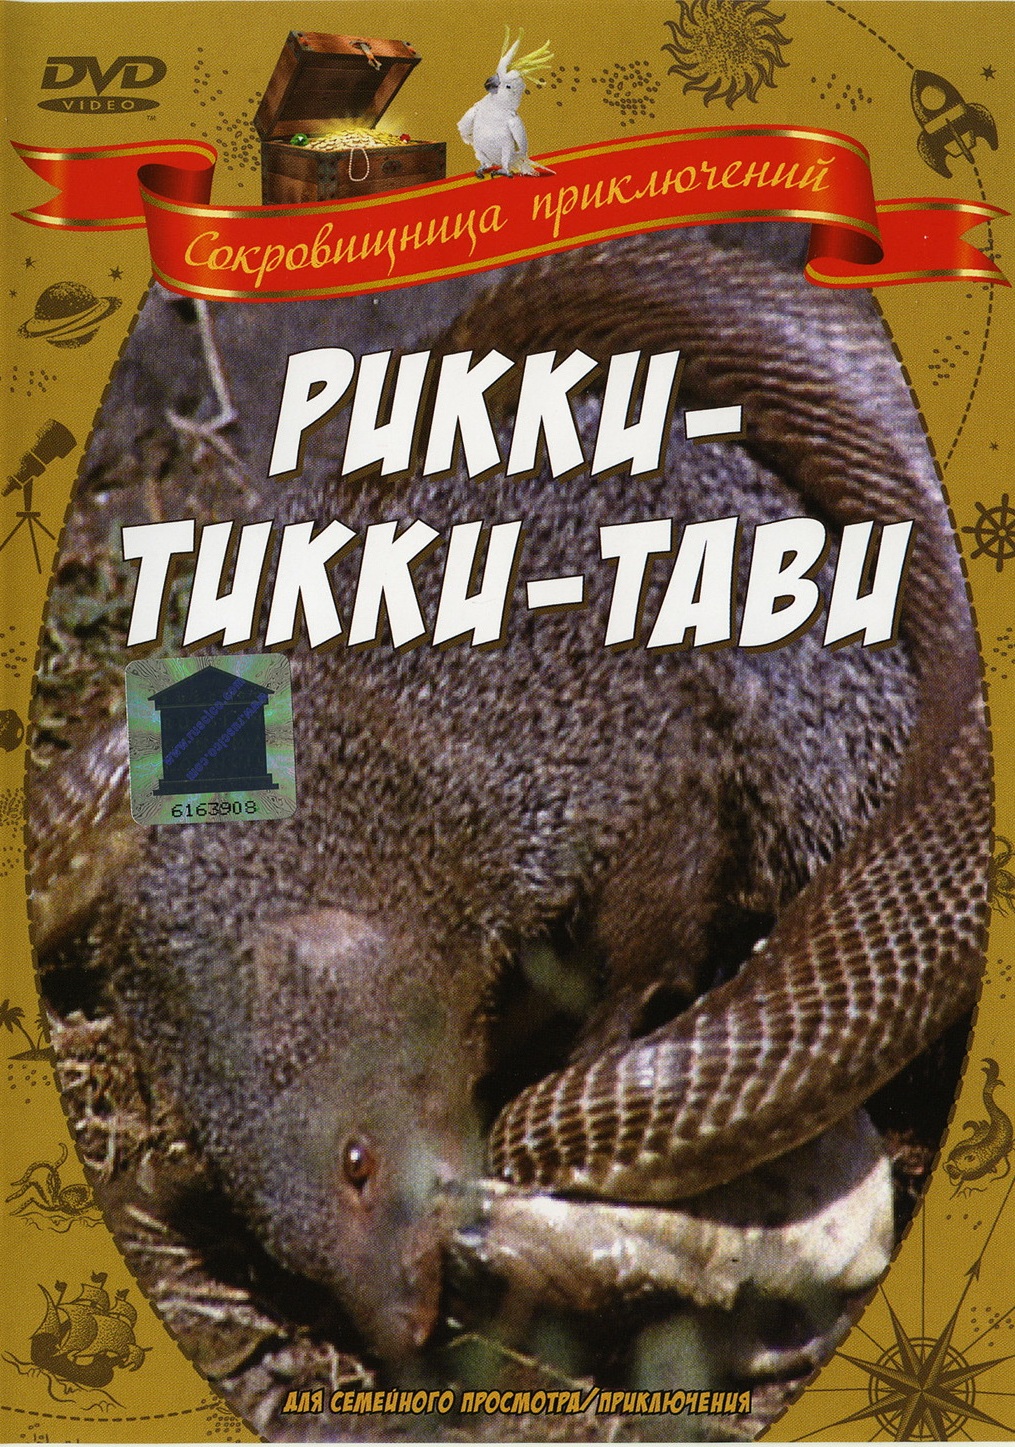 Rikki-Tikki-Tavi (1975) with English Subtitles on DVD on DVD